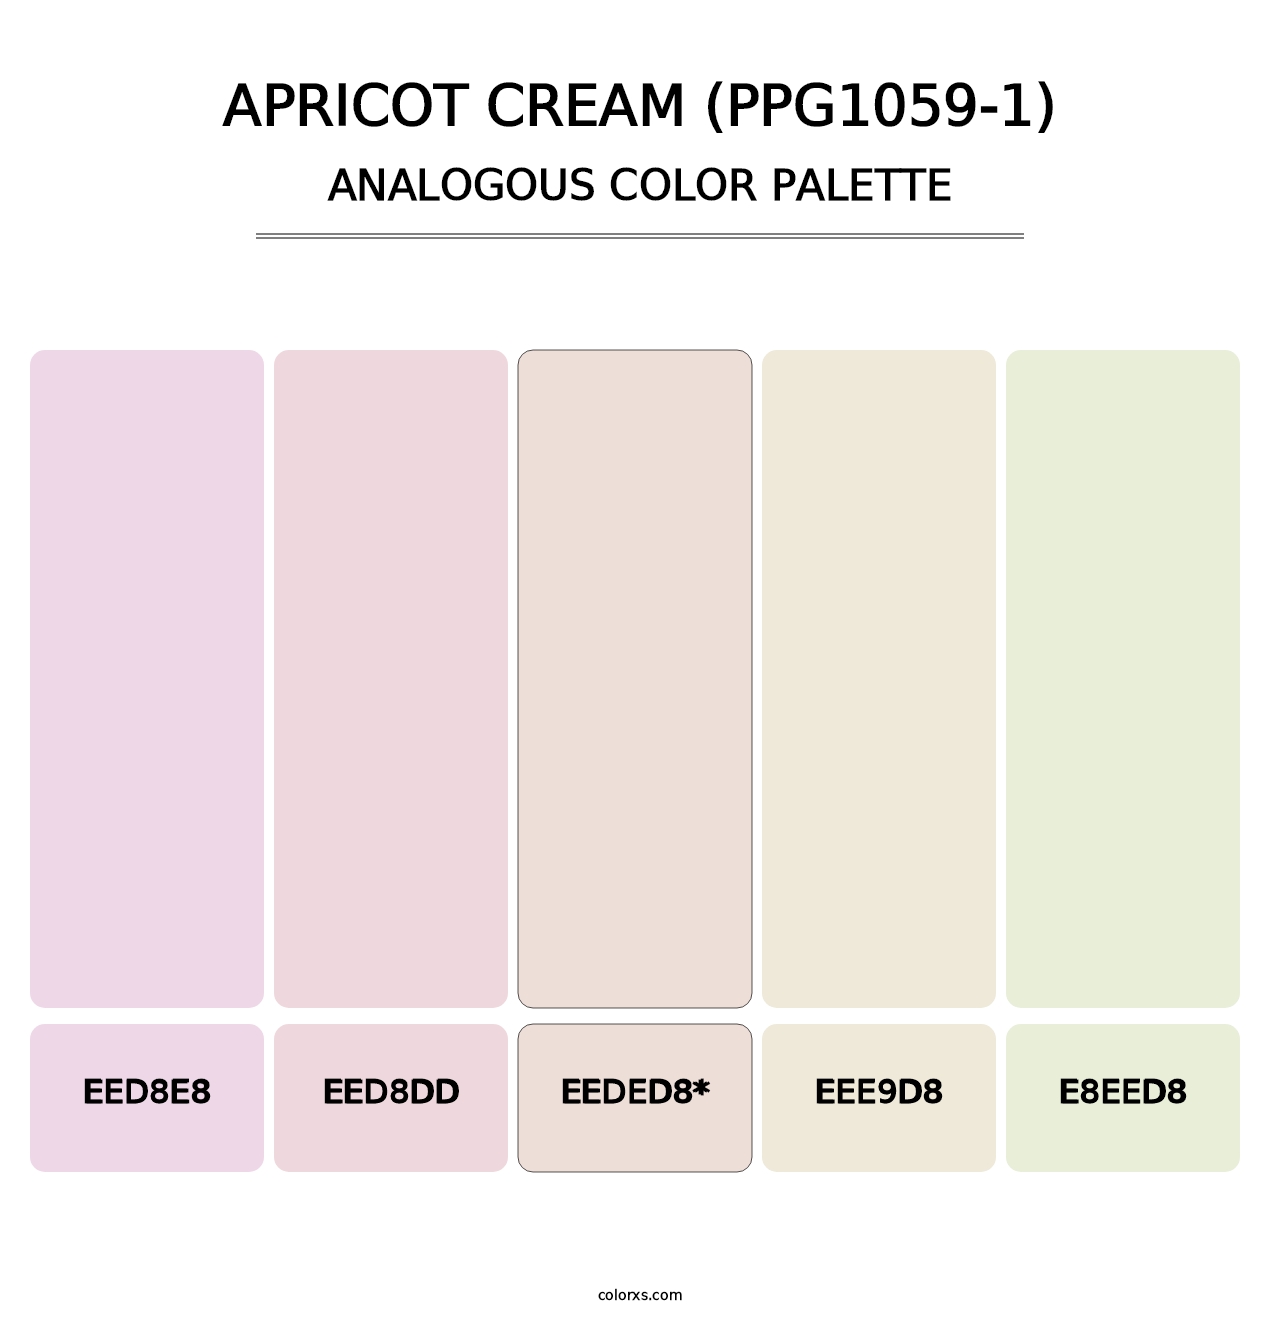 Apricot Cream (PPG1059-1) - Analogous Color Palette